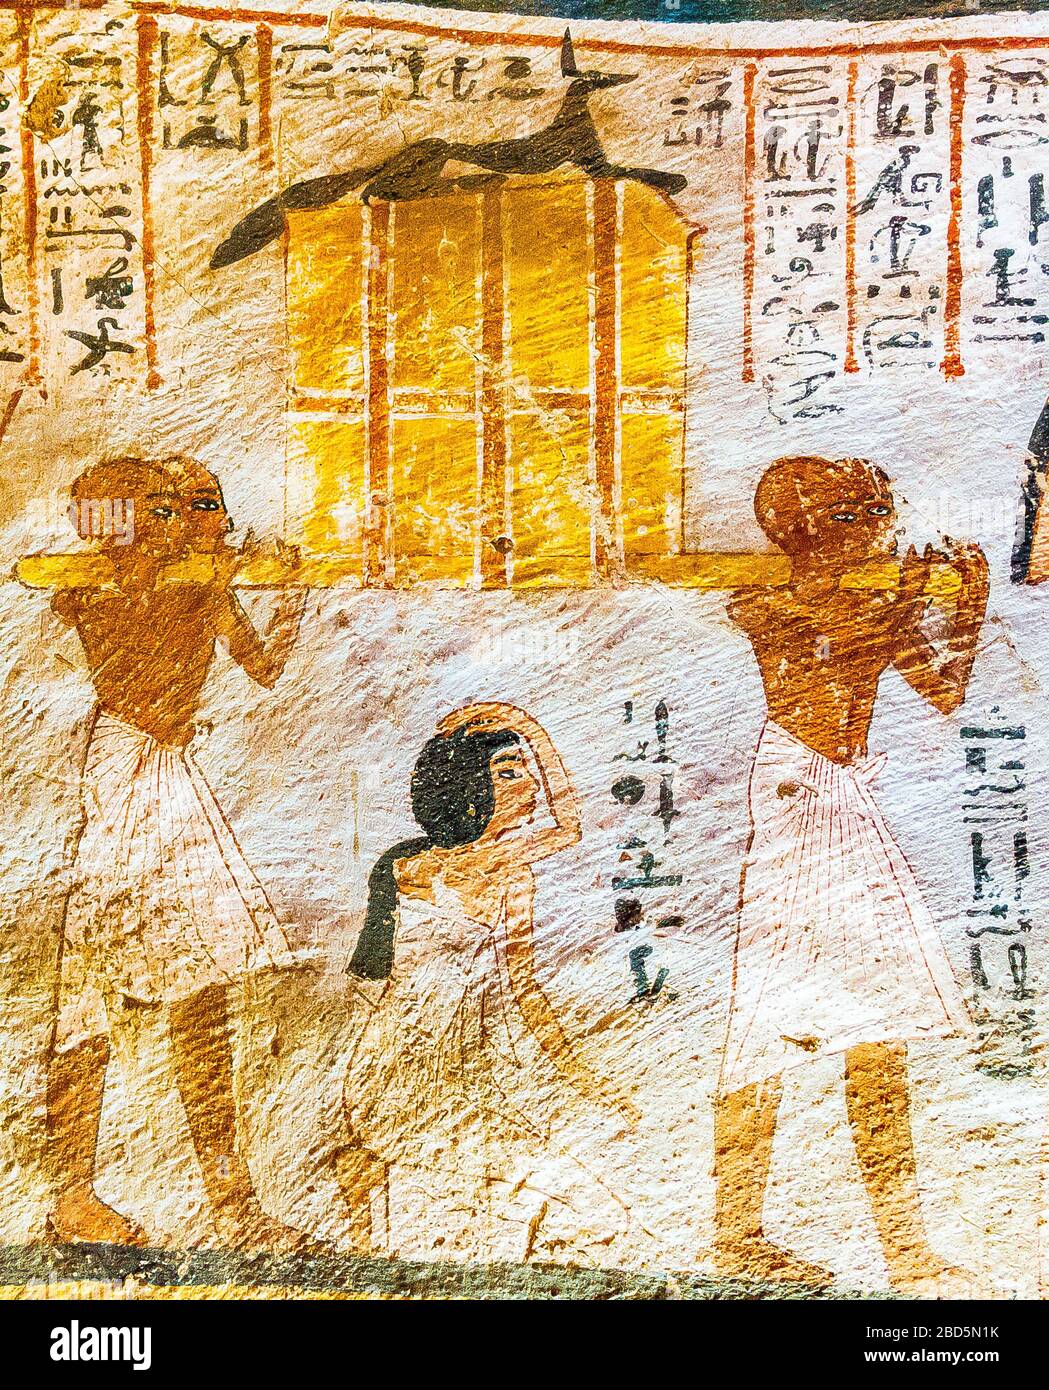 Patrimonio de la Humanidad de la UNESCO, Tebas en Egipto, Valle de los nobles (Dra Abu el Naga), tumba de Roy. Hombres portando un pecho que contiene los jarrones canópicos. Foto de stock